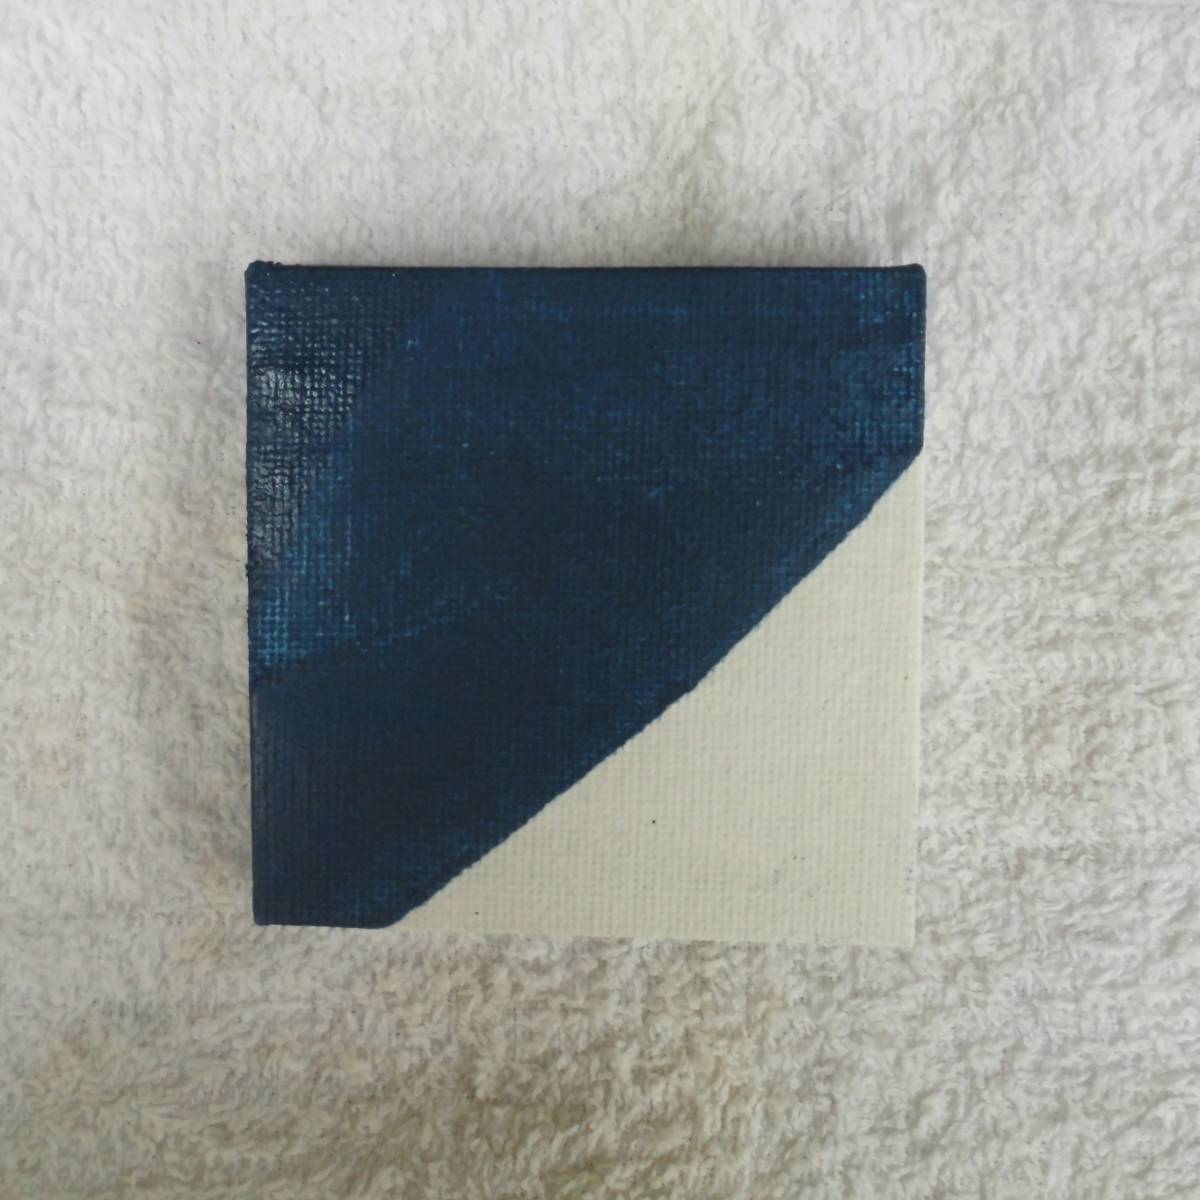 □ لوحة زيتية سلسلة زرقاء / قطعة صغيرة 20.09. ب, تلوين, طلاء زيتي, اللوحة التجريدية